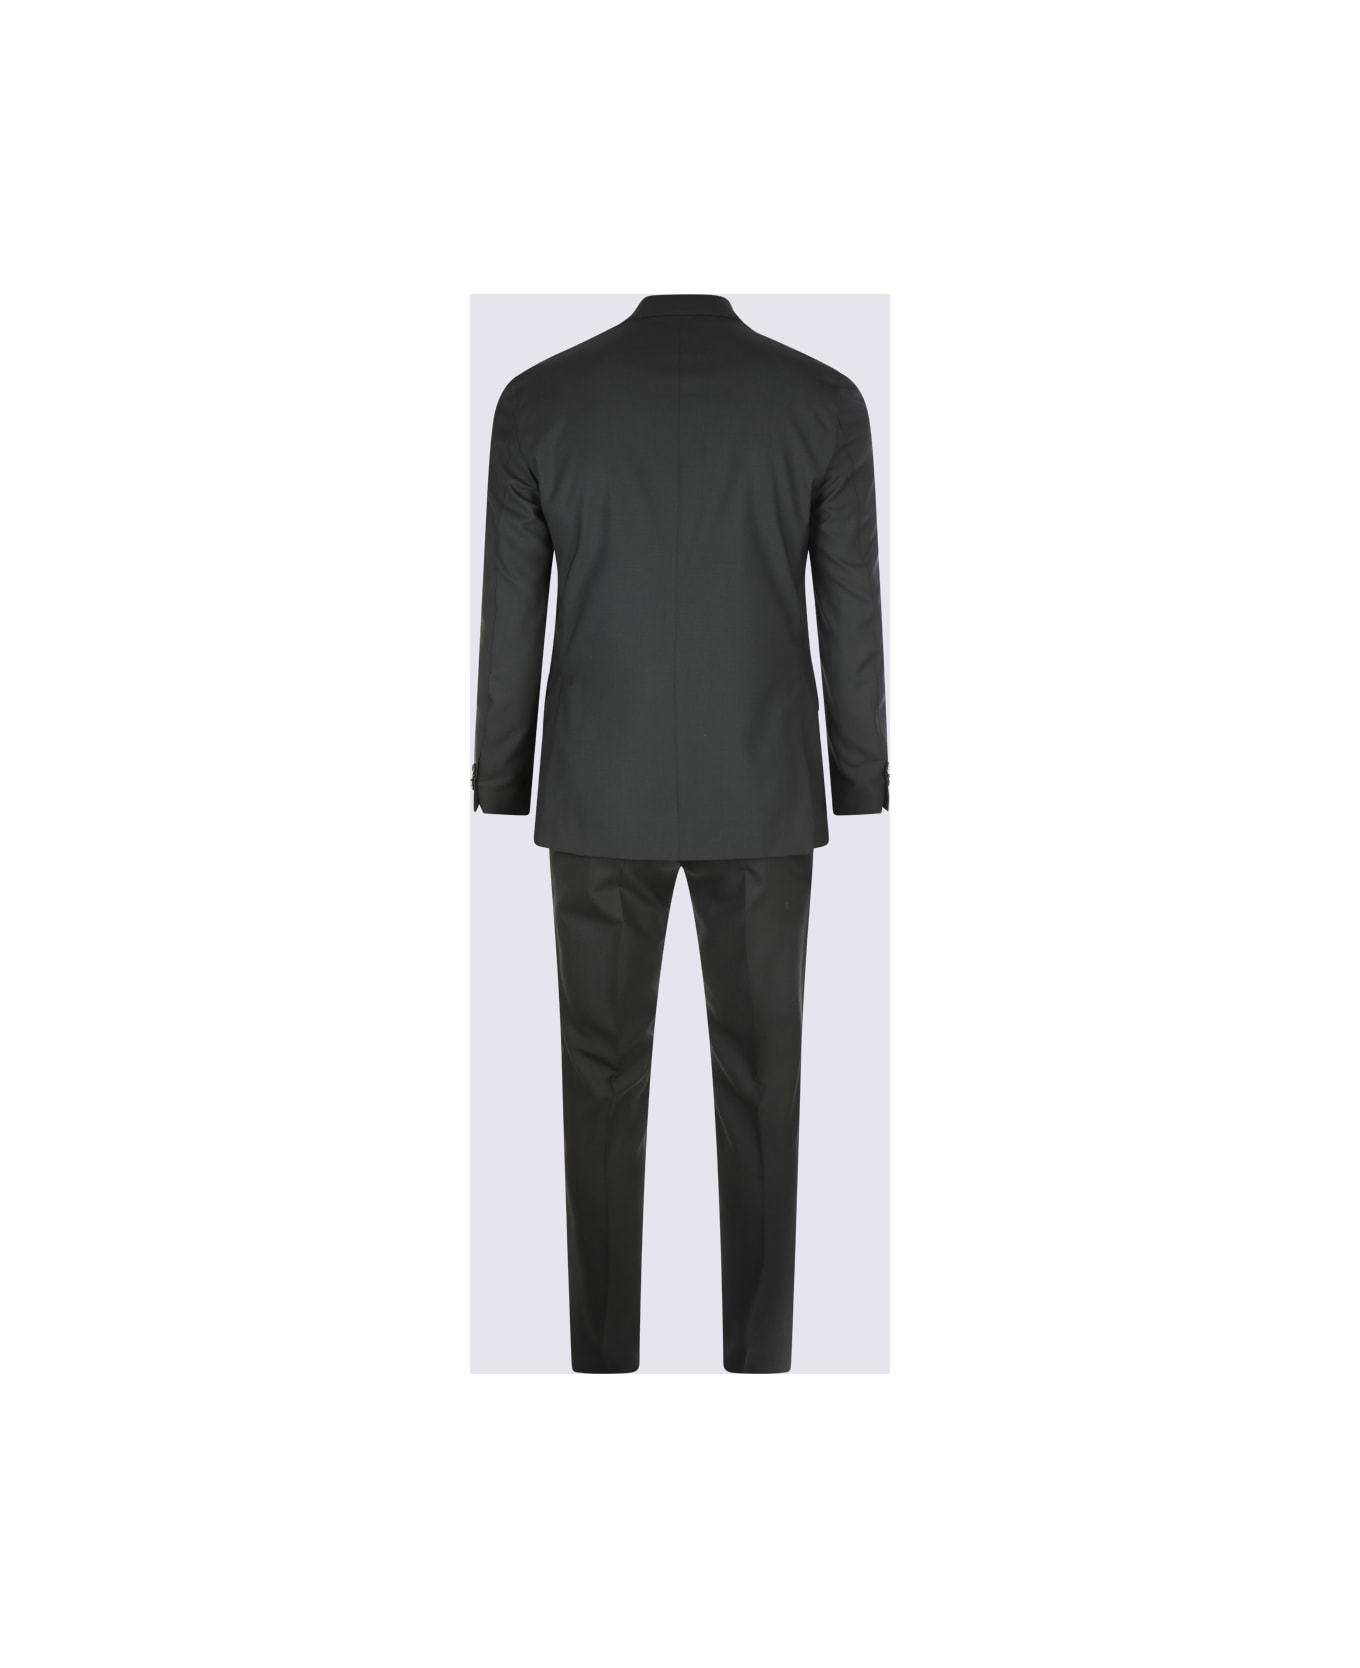 Lardini Black Wool Suits - Black